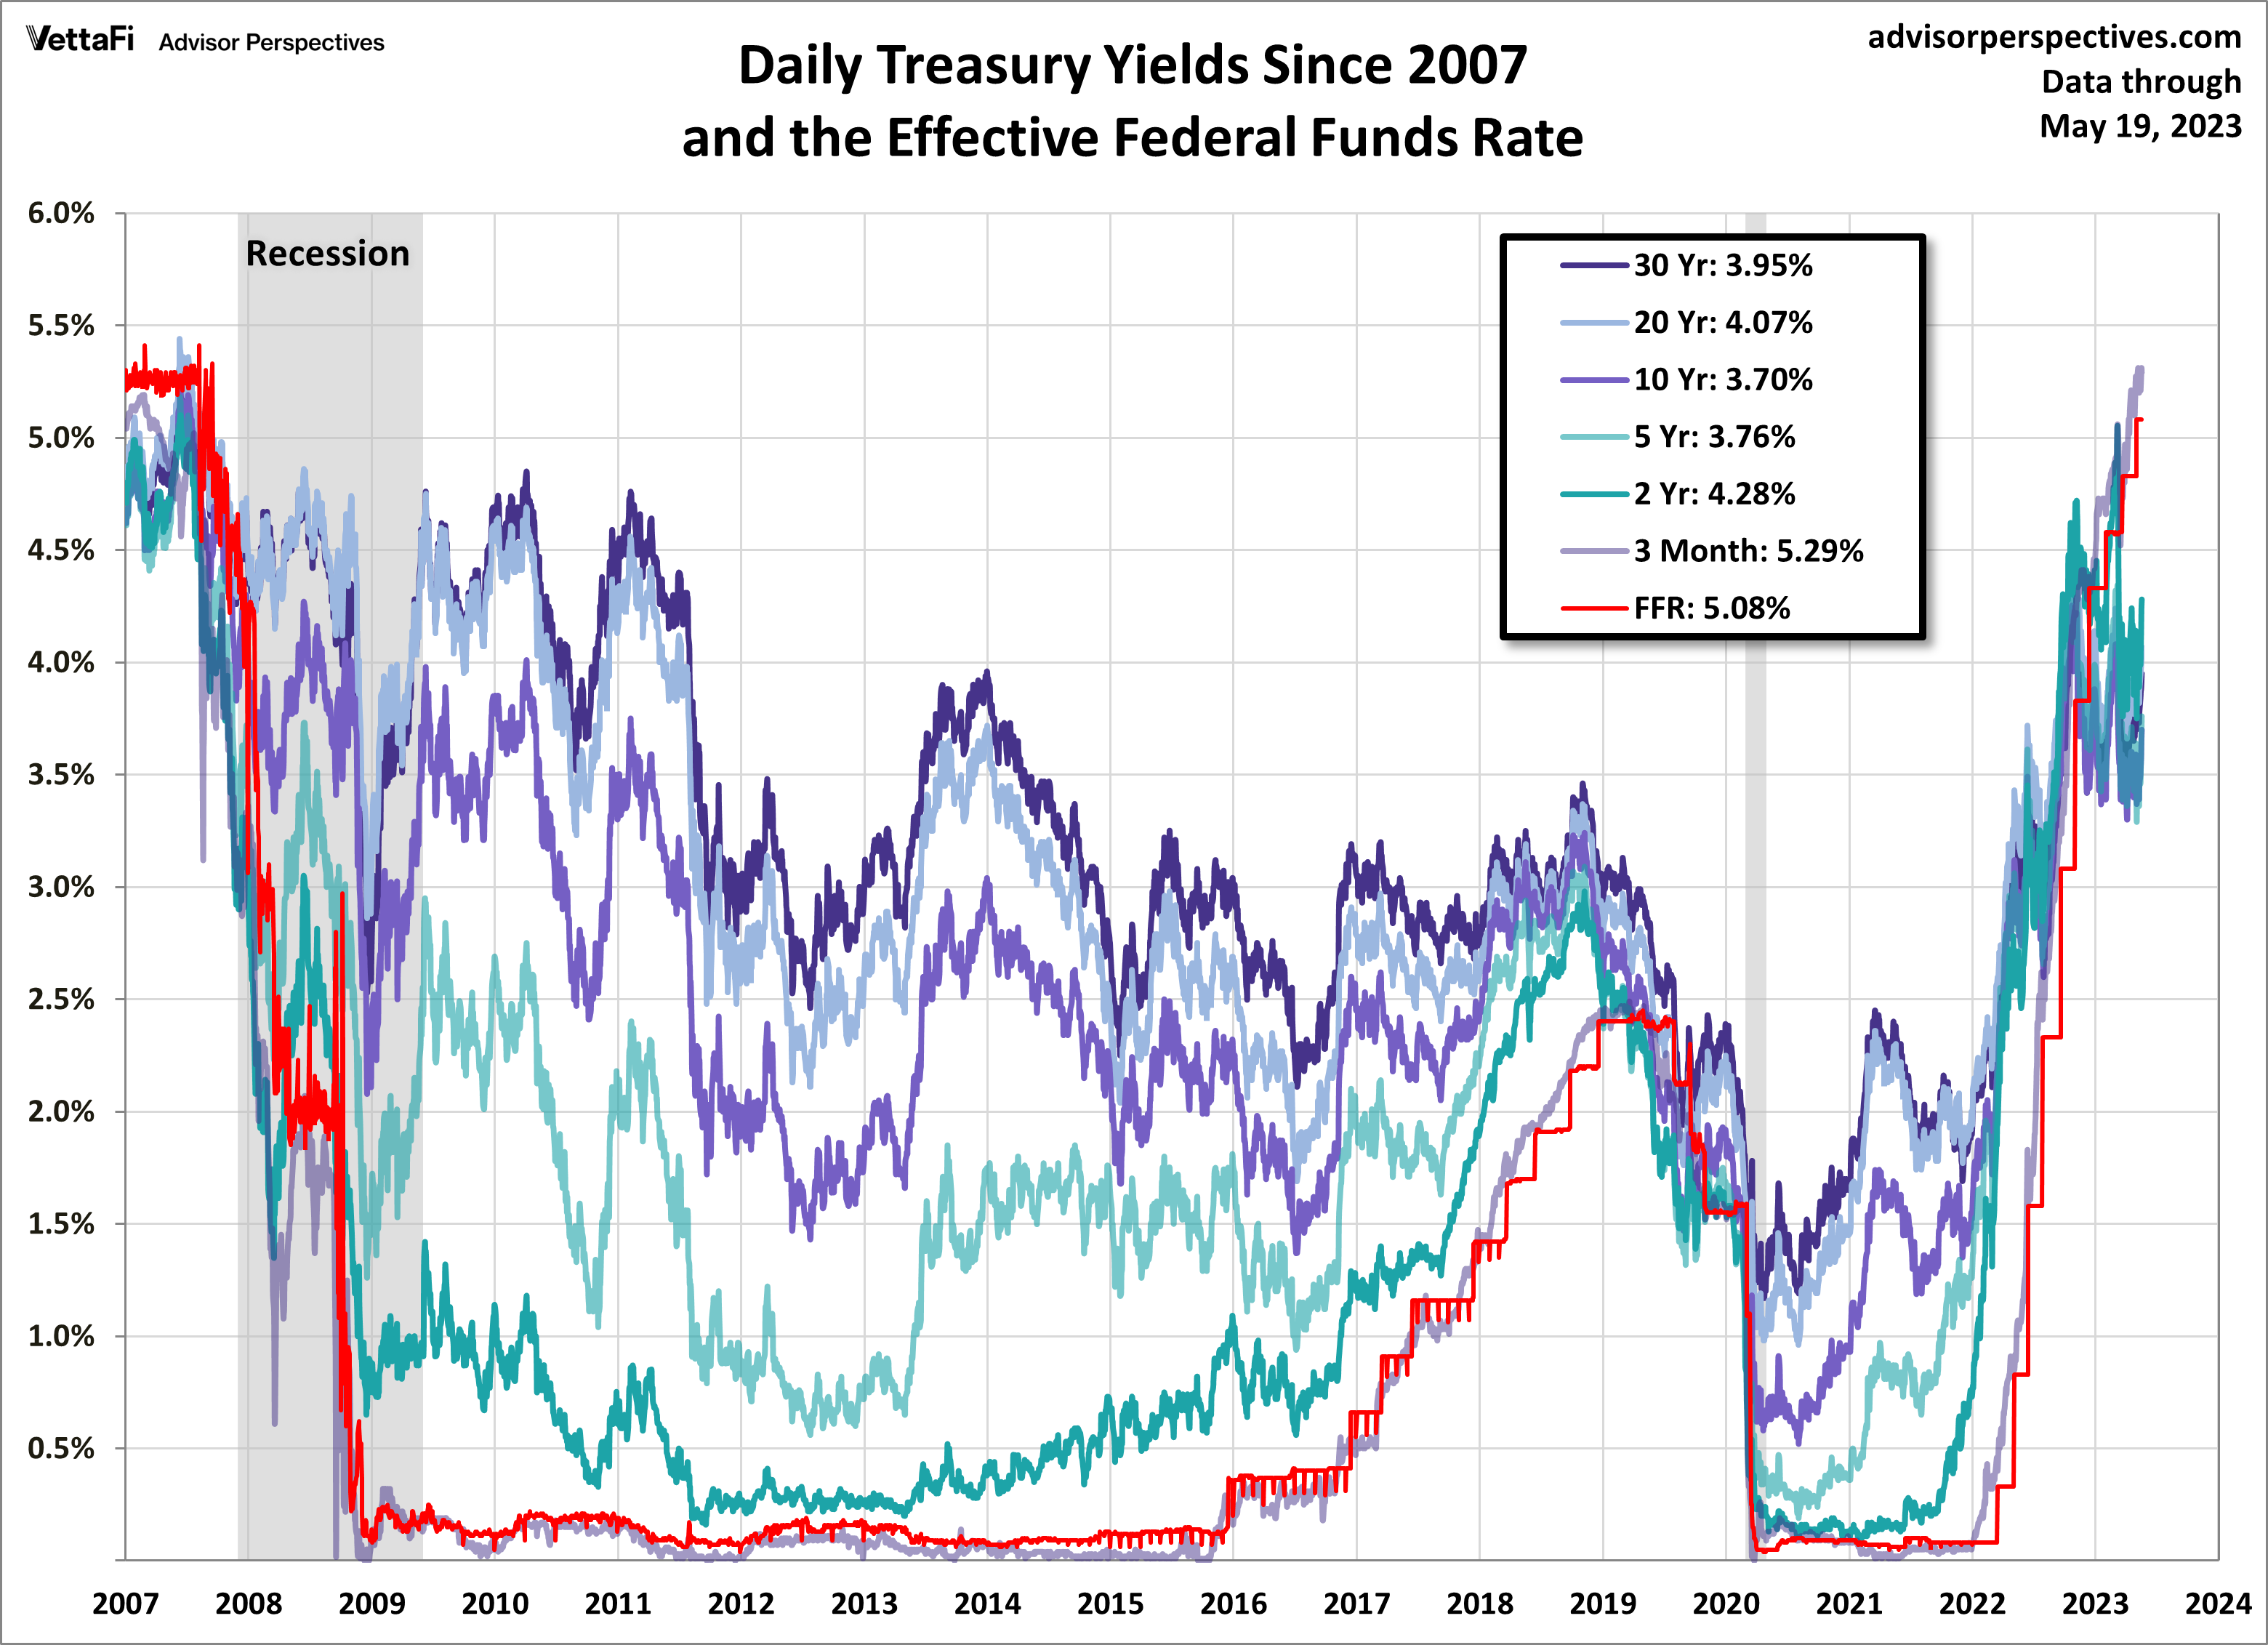 Treasury Yields Snapshot: May 19, 2023